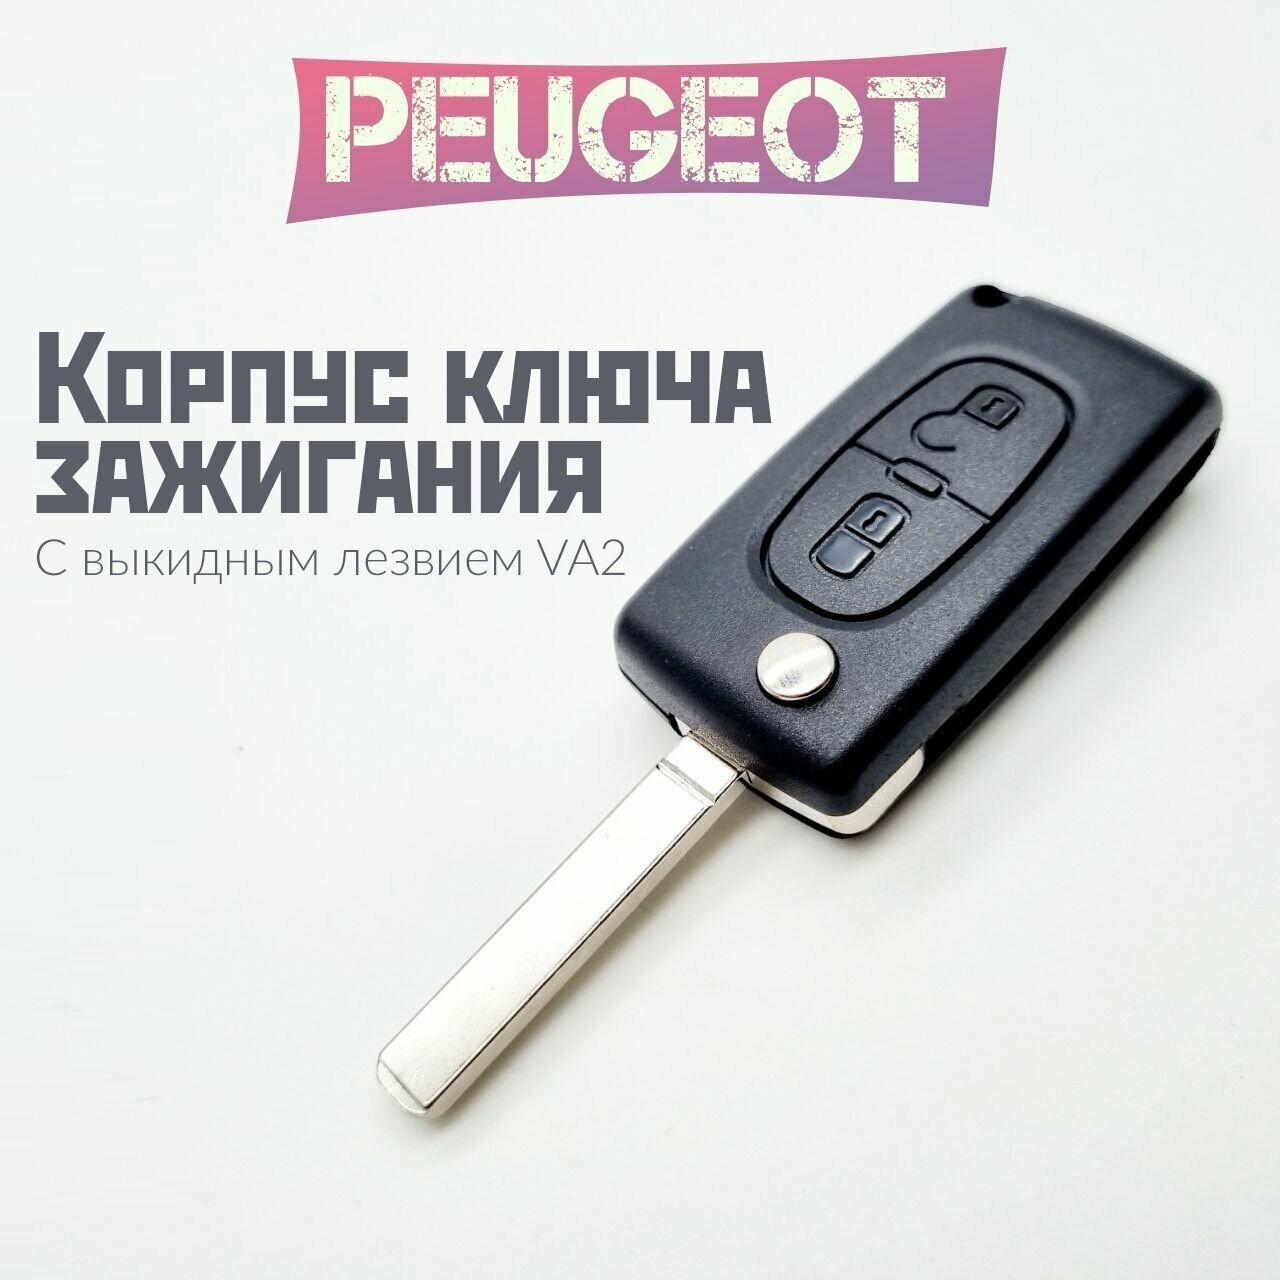 Корпус ключа зажигания Peugeot/Пежо с выкидным лезвием (VA2) 2 кнопки / CE0523 для Peugeot 107 207 307 308 407 408 508 3008 4008